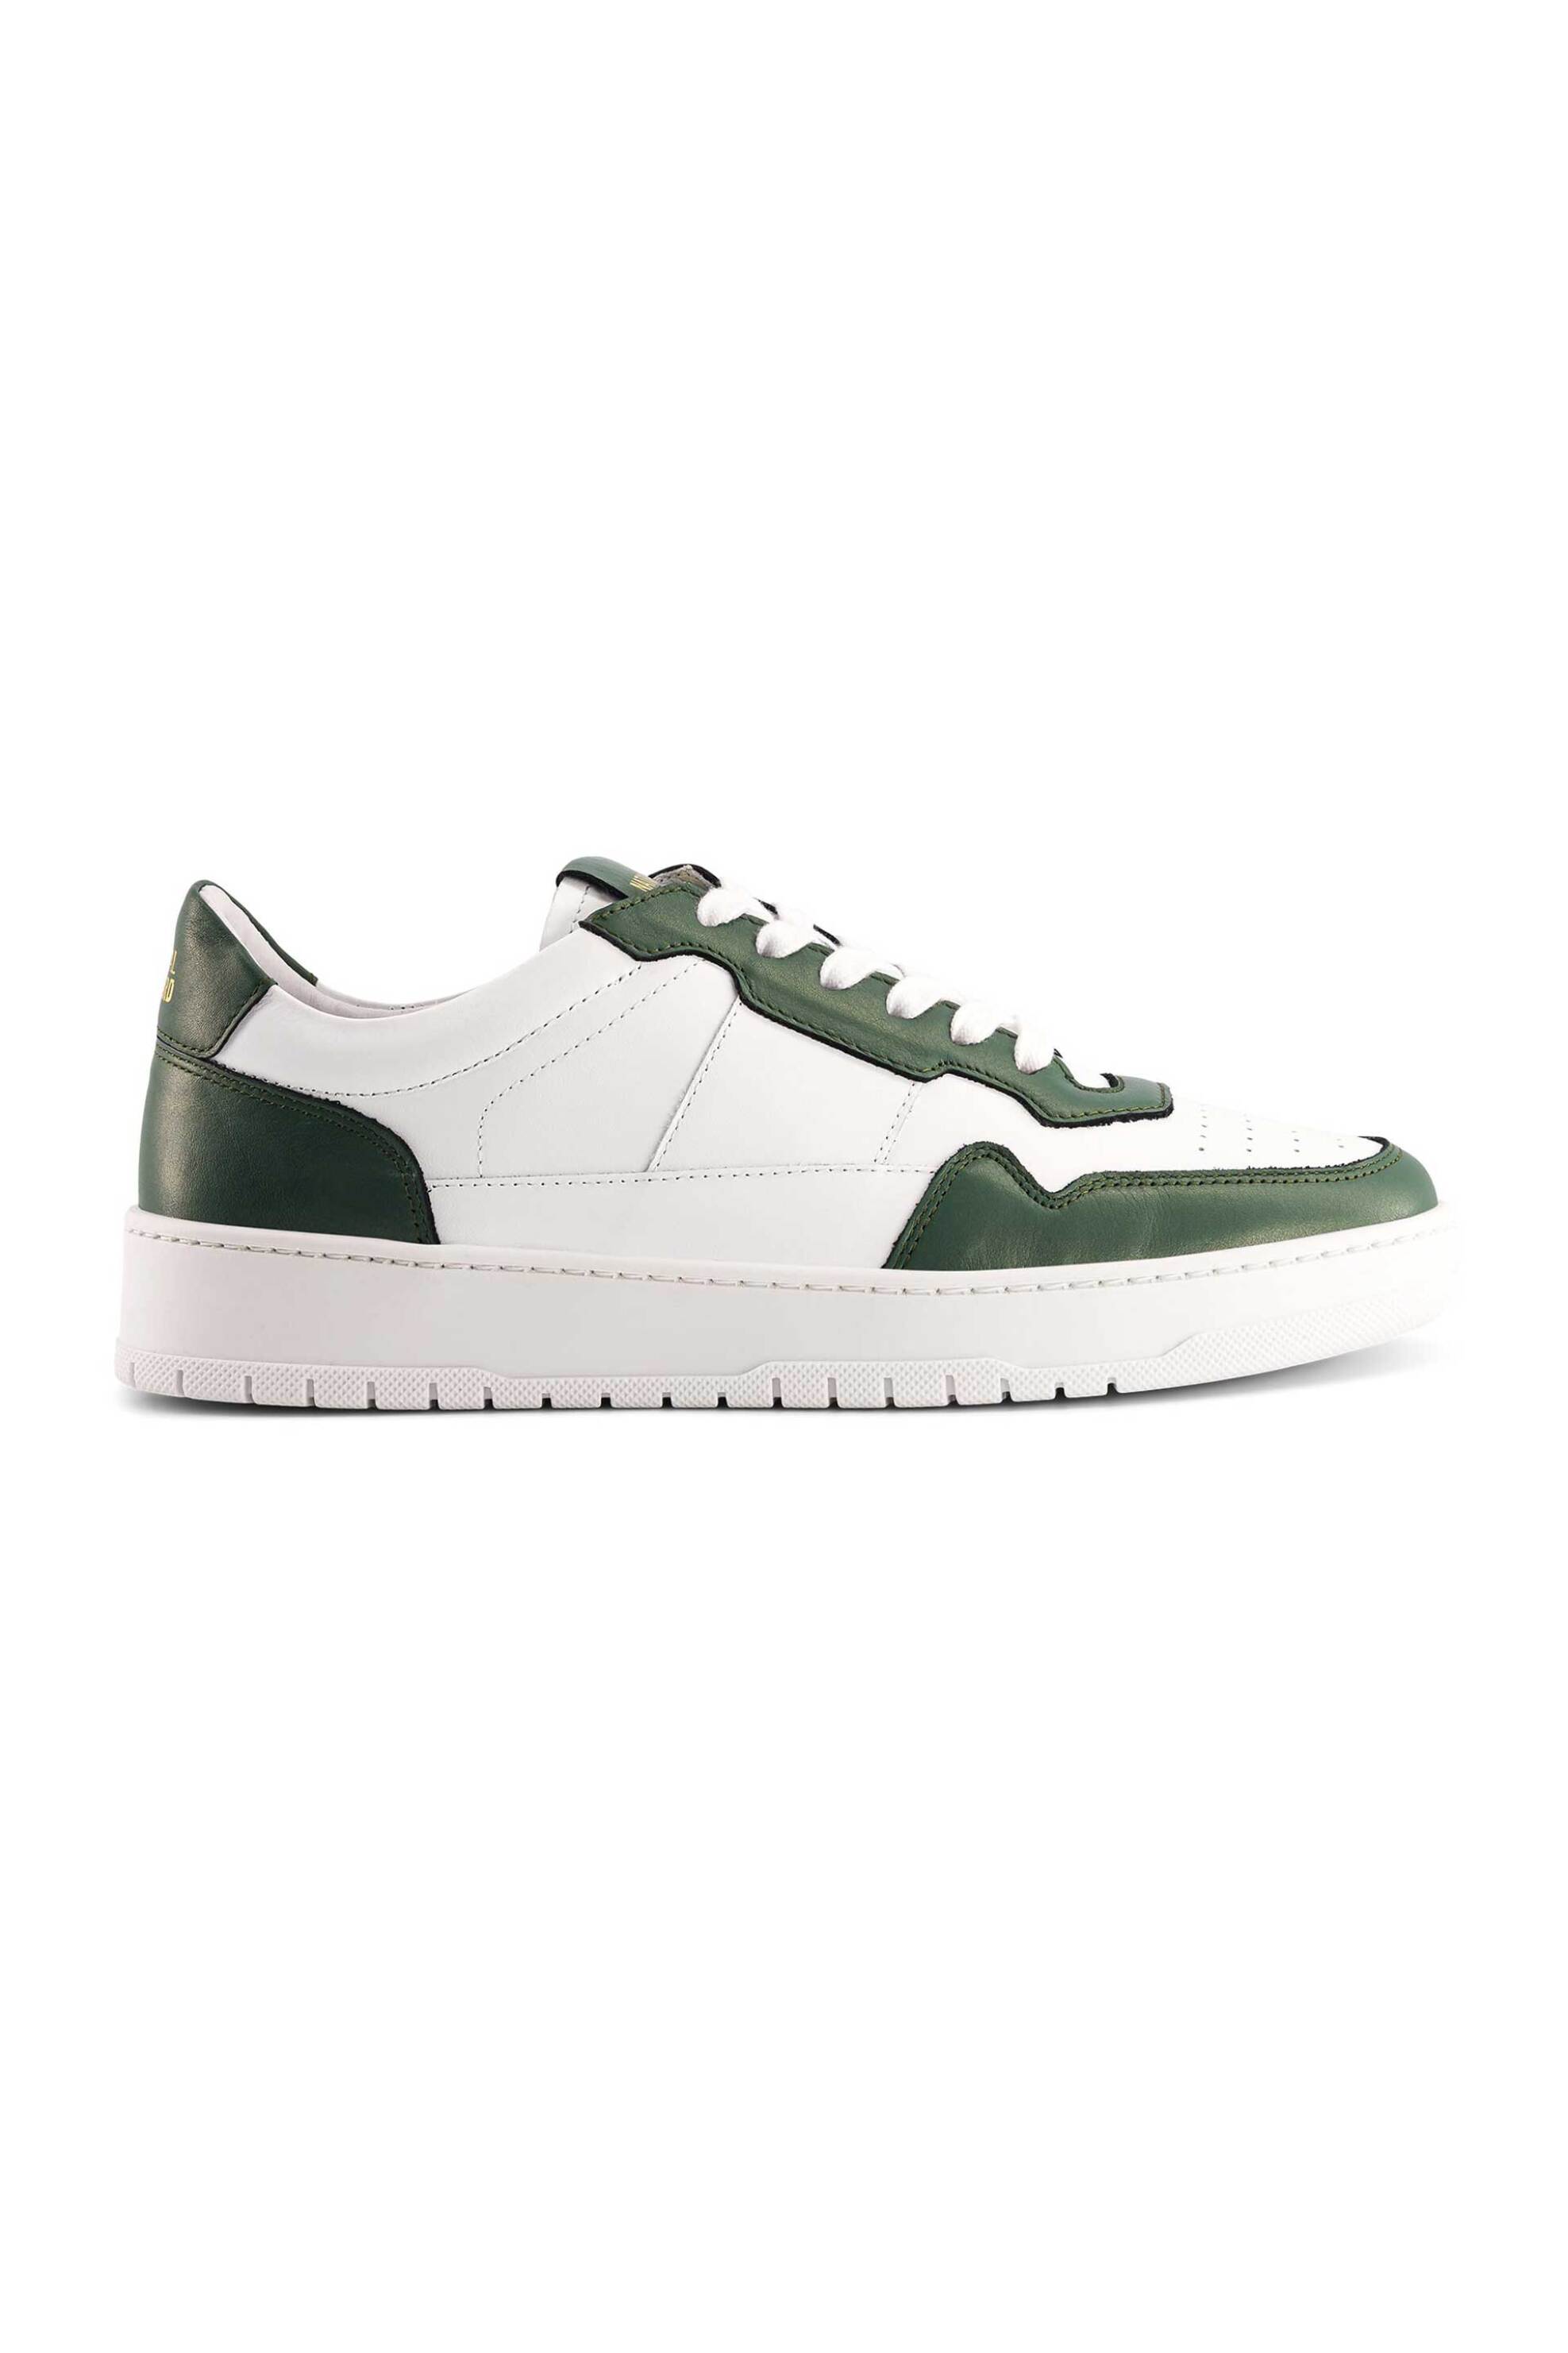 Ανδρική Μόδα > Ανδρικά Παπούτσια > Ανδρικά Sneakers National Standard ανδρικά sneakers μονόχρωμα "Edition 6 White Green" - M06-24S-004 Λευκό